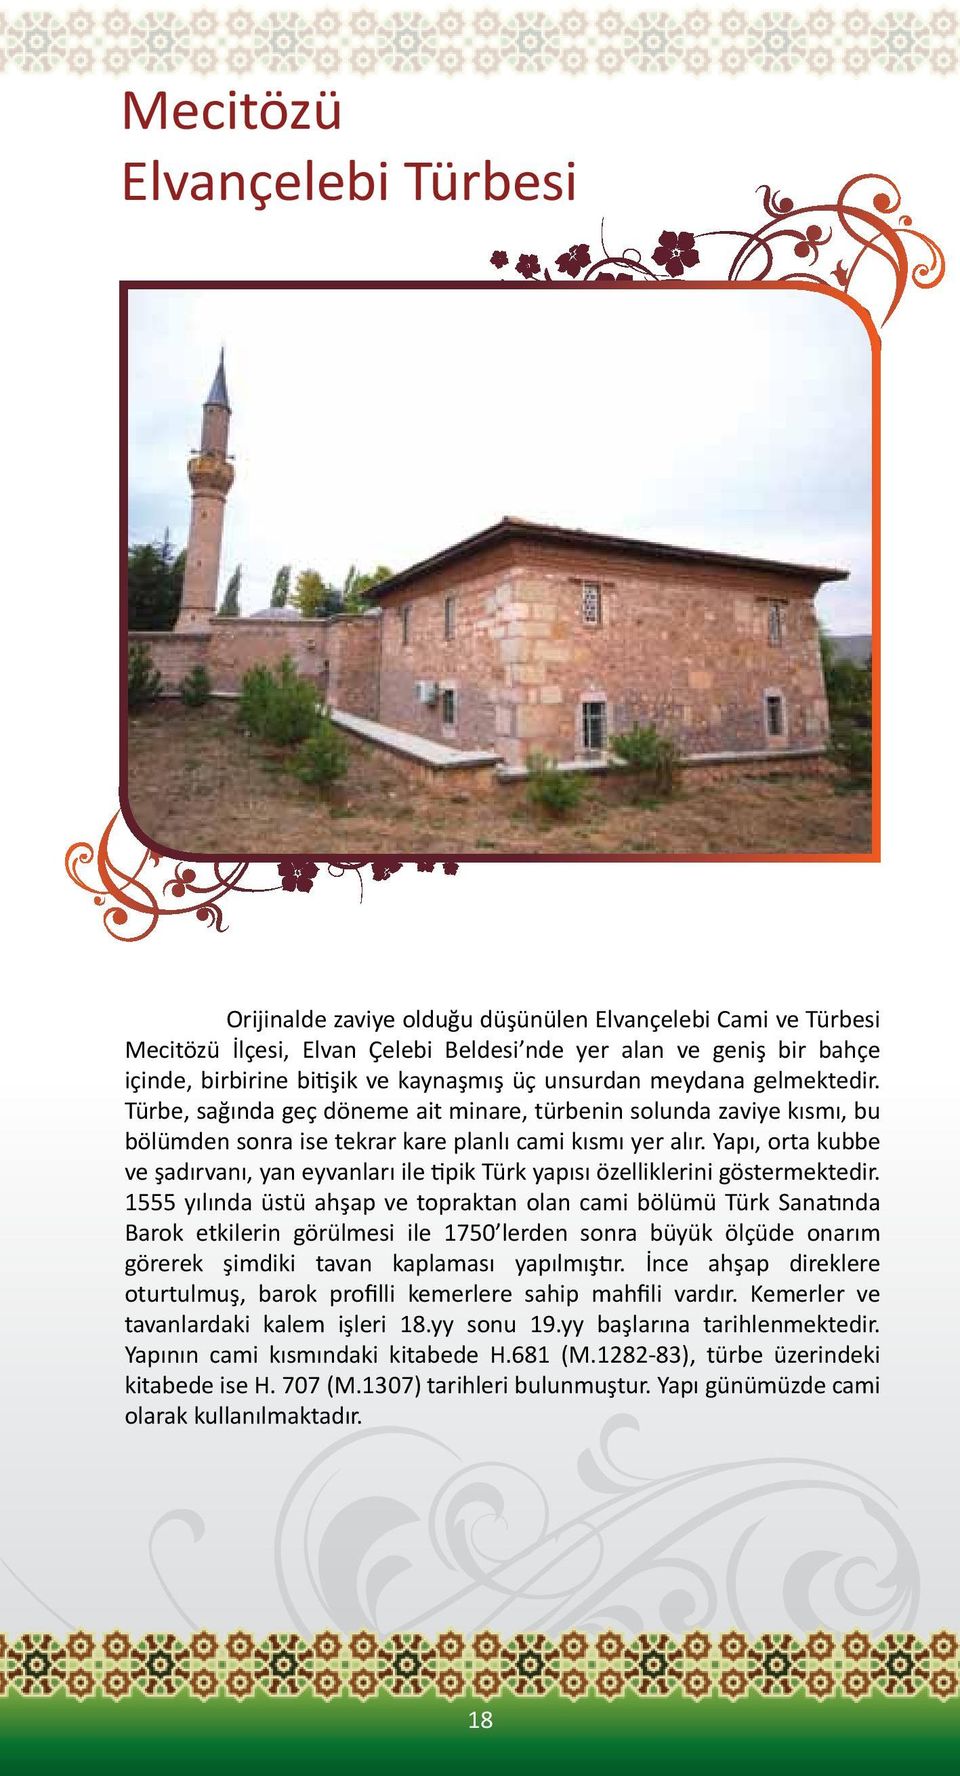 Yapı, orta kubbe ve şadırvanı, yan eyvanları ile tipik Türk yapısı özelliklerini göstermektedir.